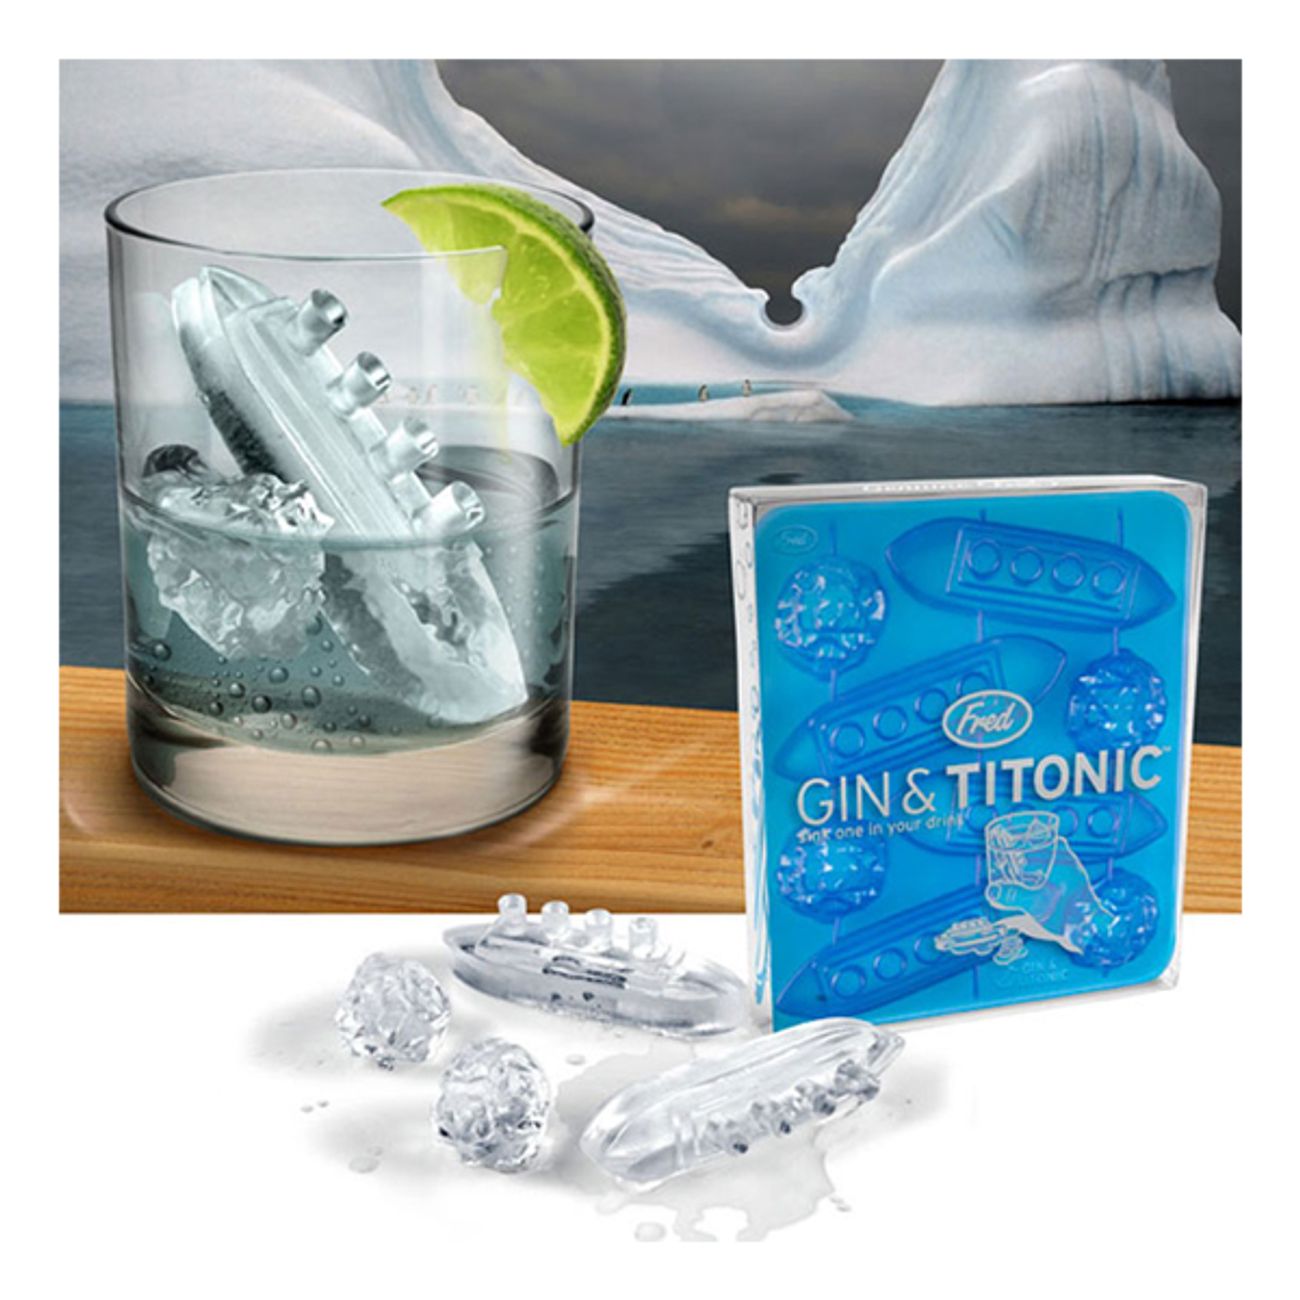 gin-titonic-1